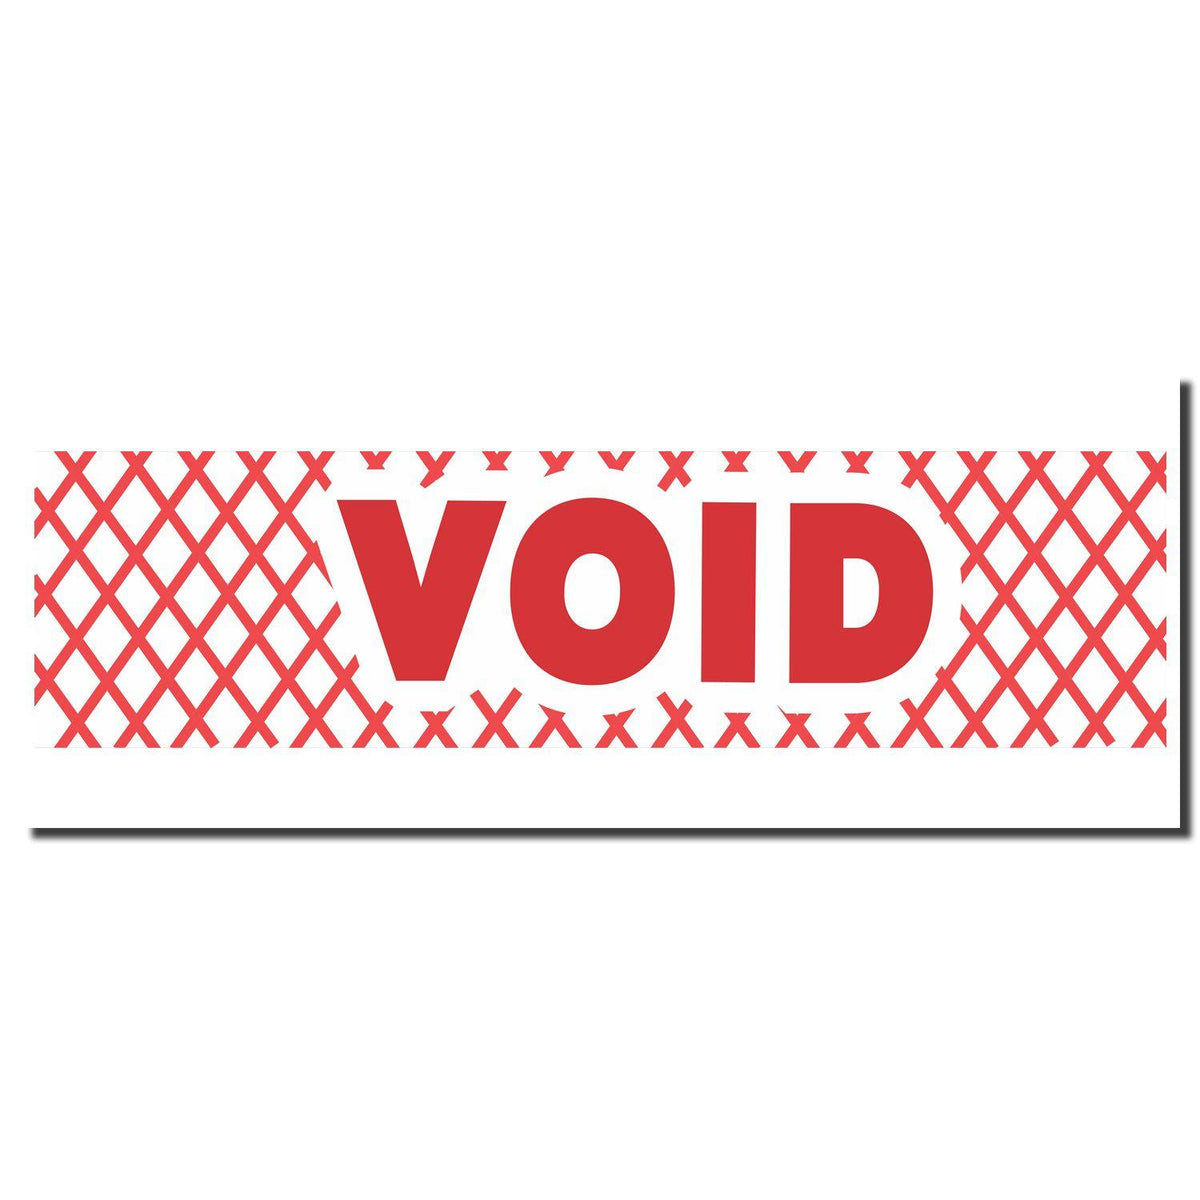 Enlarged Imprint for Red Void Xstamper Stamp